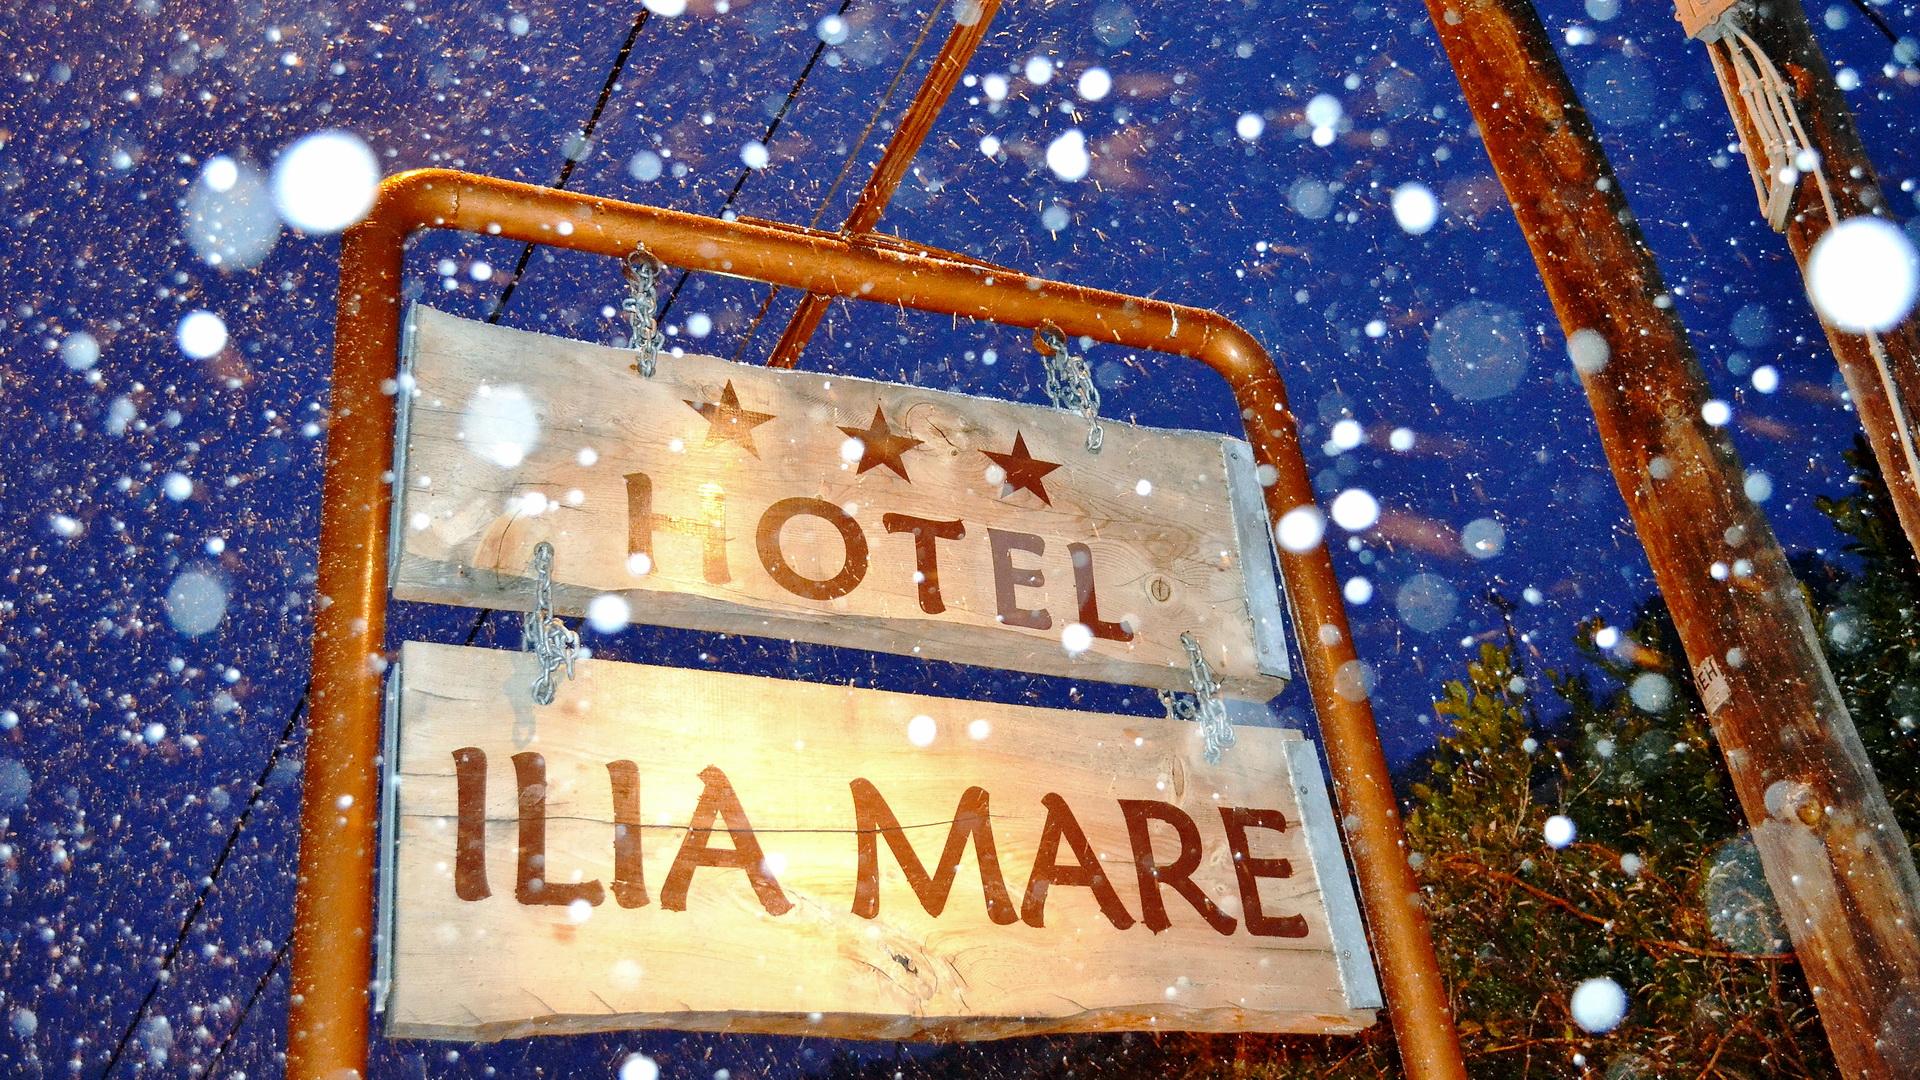 Ilia Mare Hotel - Β.Εύβοια